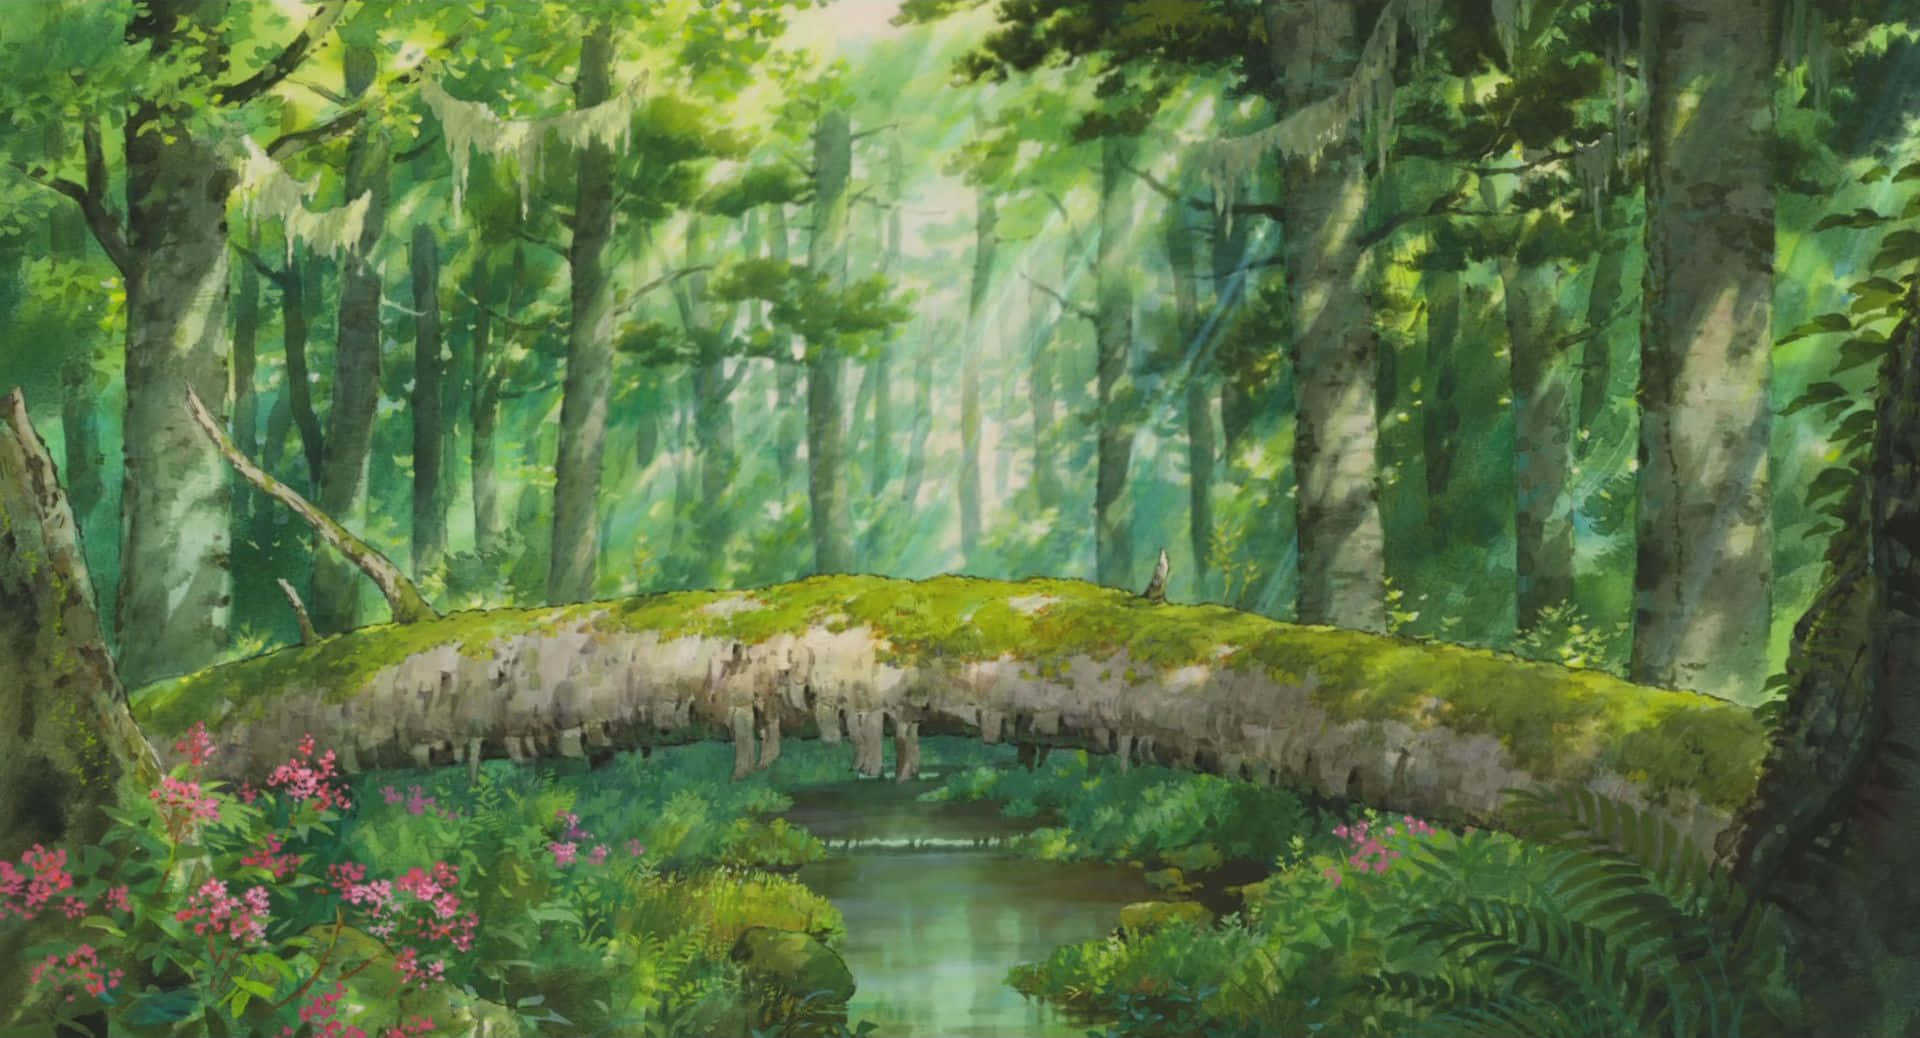 Hintergrundbildvon Arrietty